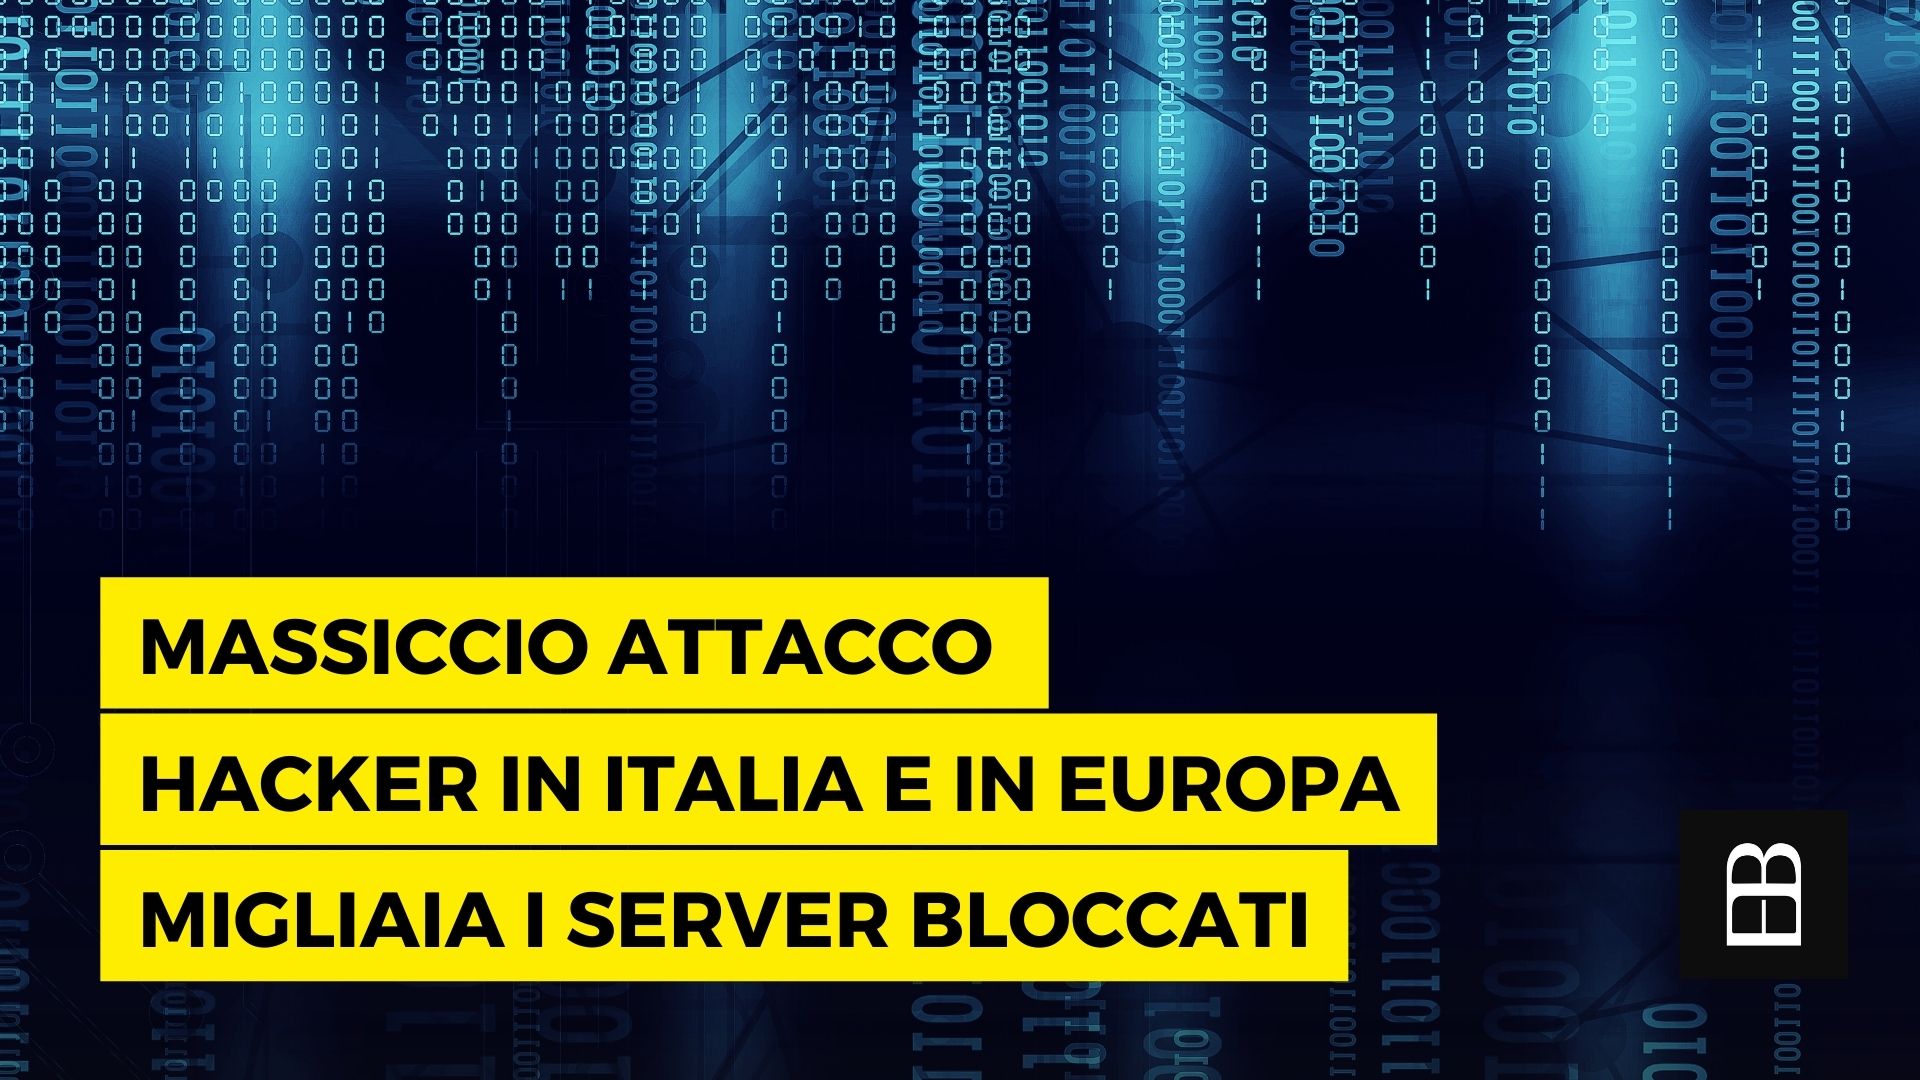 Massiccio attacco hacker in Italia e in Europa. Migliaia i server bloccati